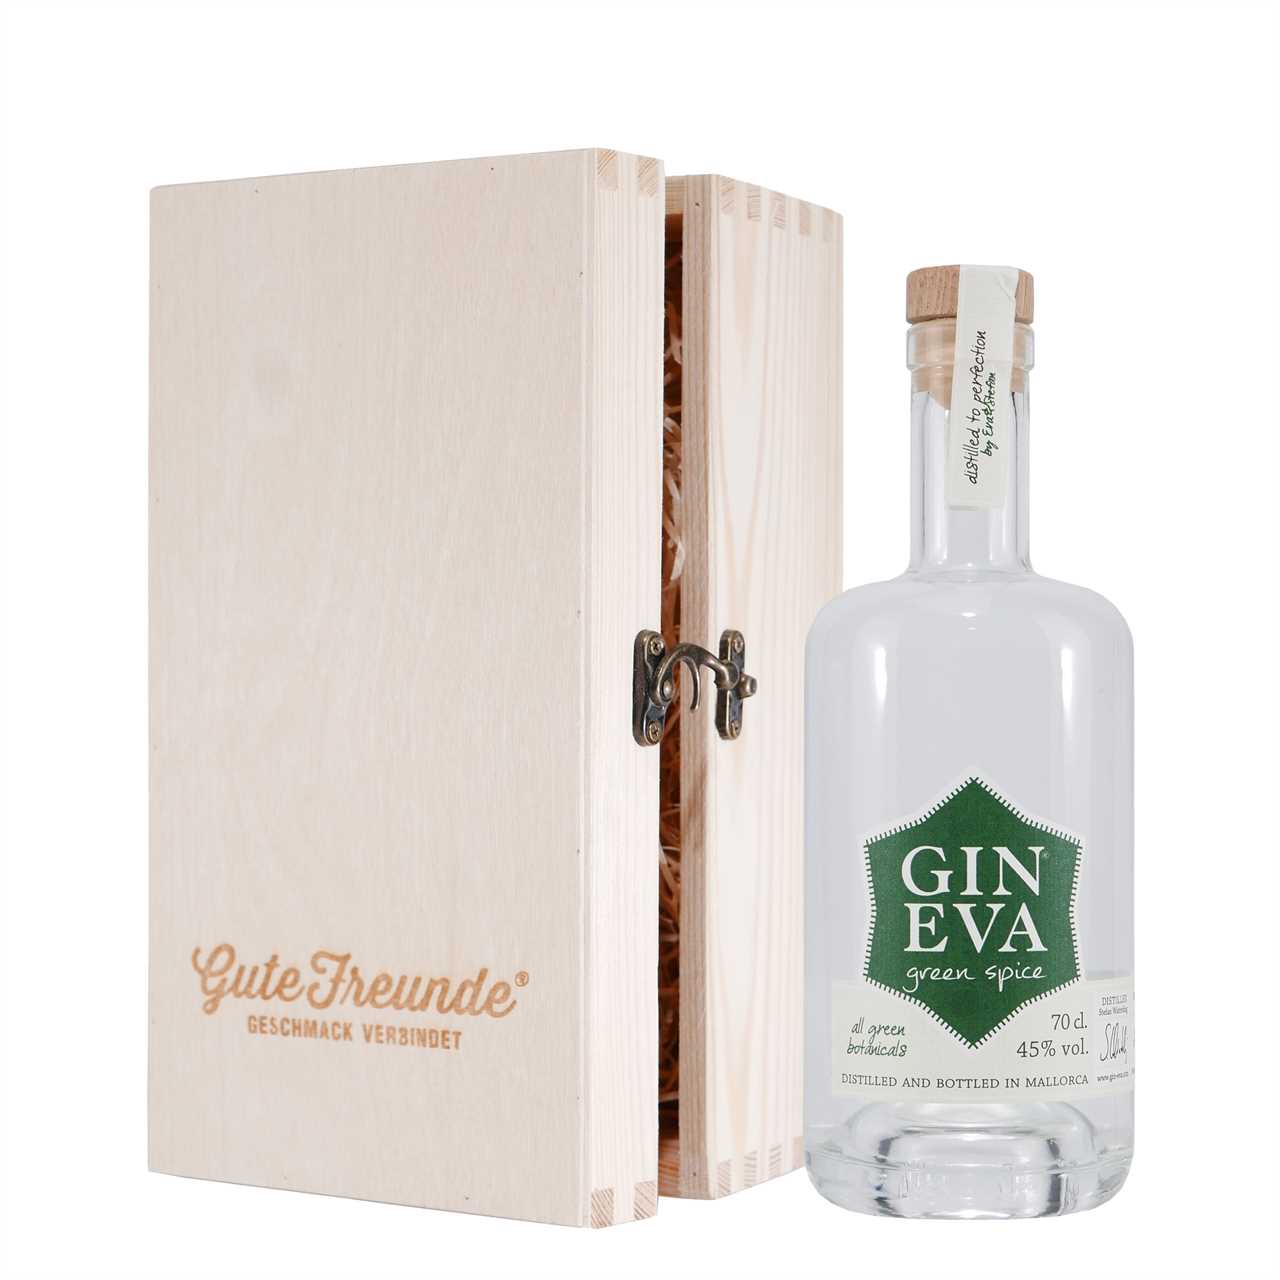 Gin Eva Green Spice Dry Gin mit Geschenk-HK